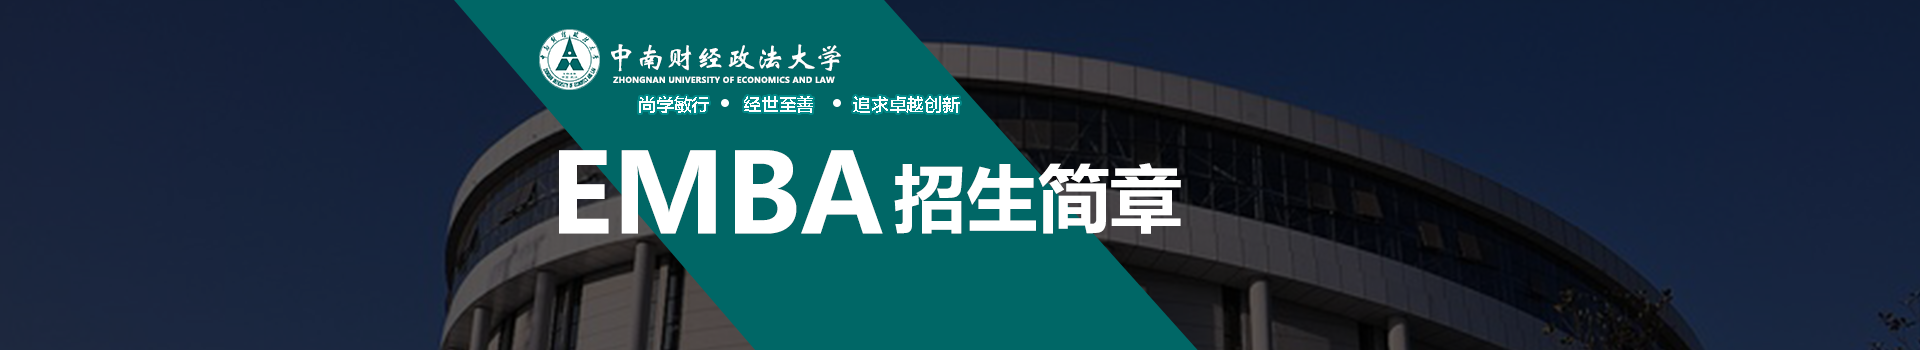 中南财经政法大学MBA学院高级工商管理硕士EMBA招生简章